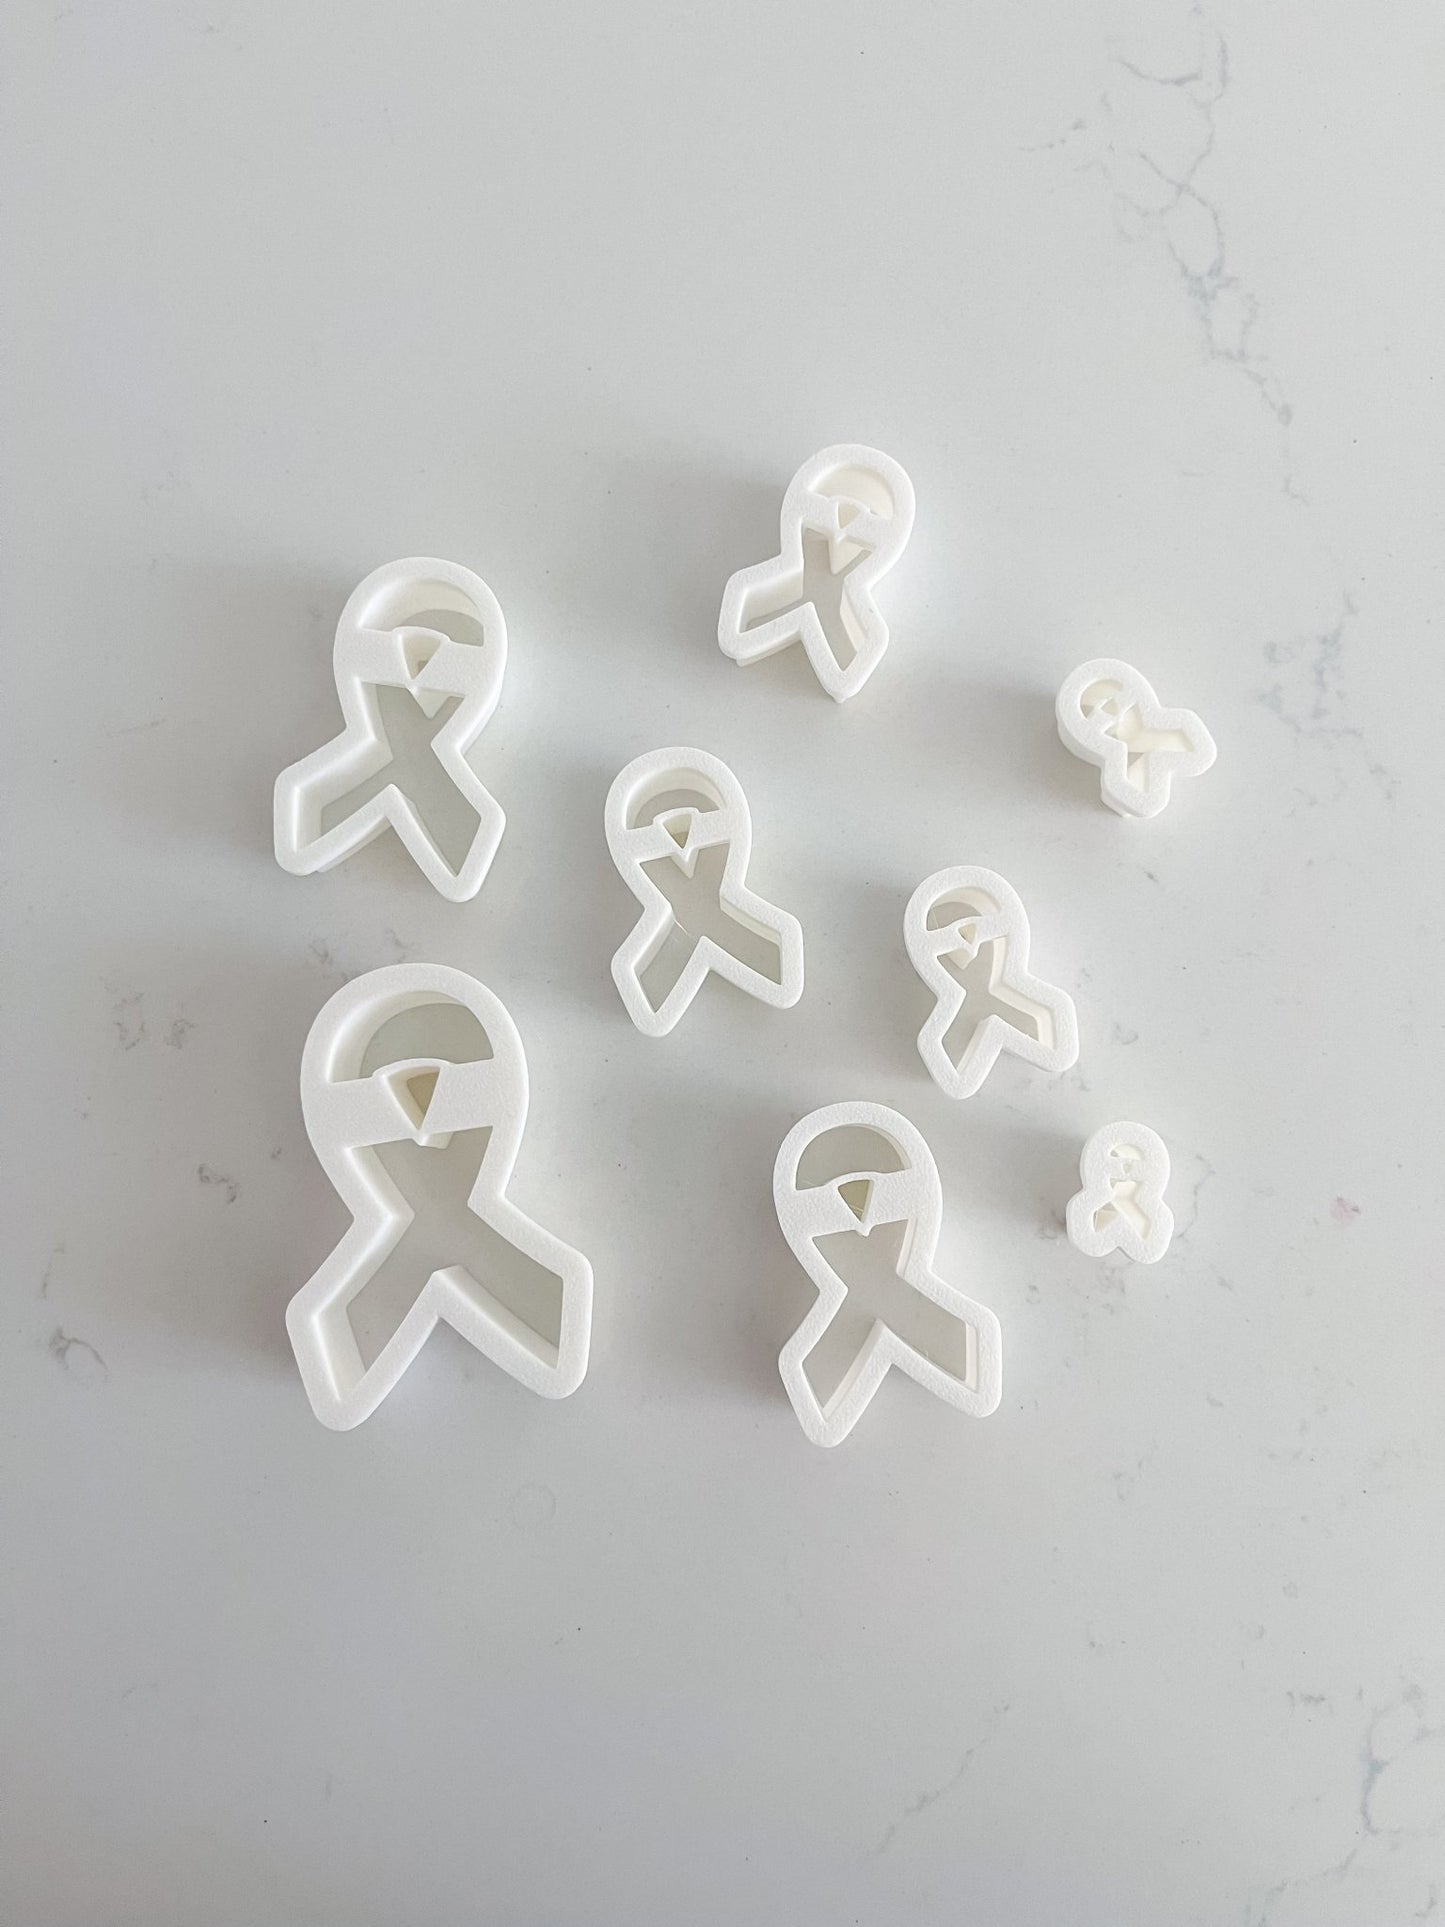 Cancer Awareness Ribbon Clay Cutter Set - Designs by Lauren Ann